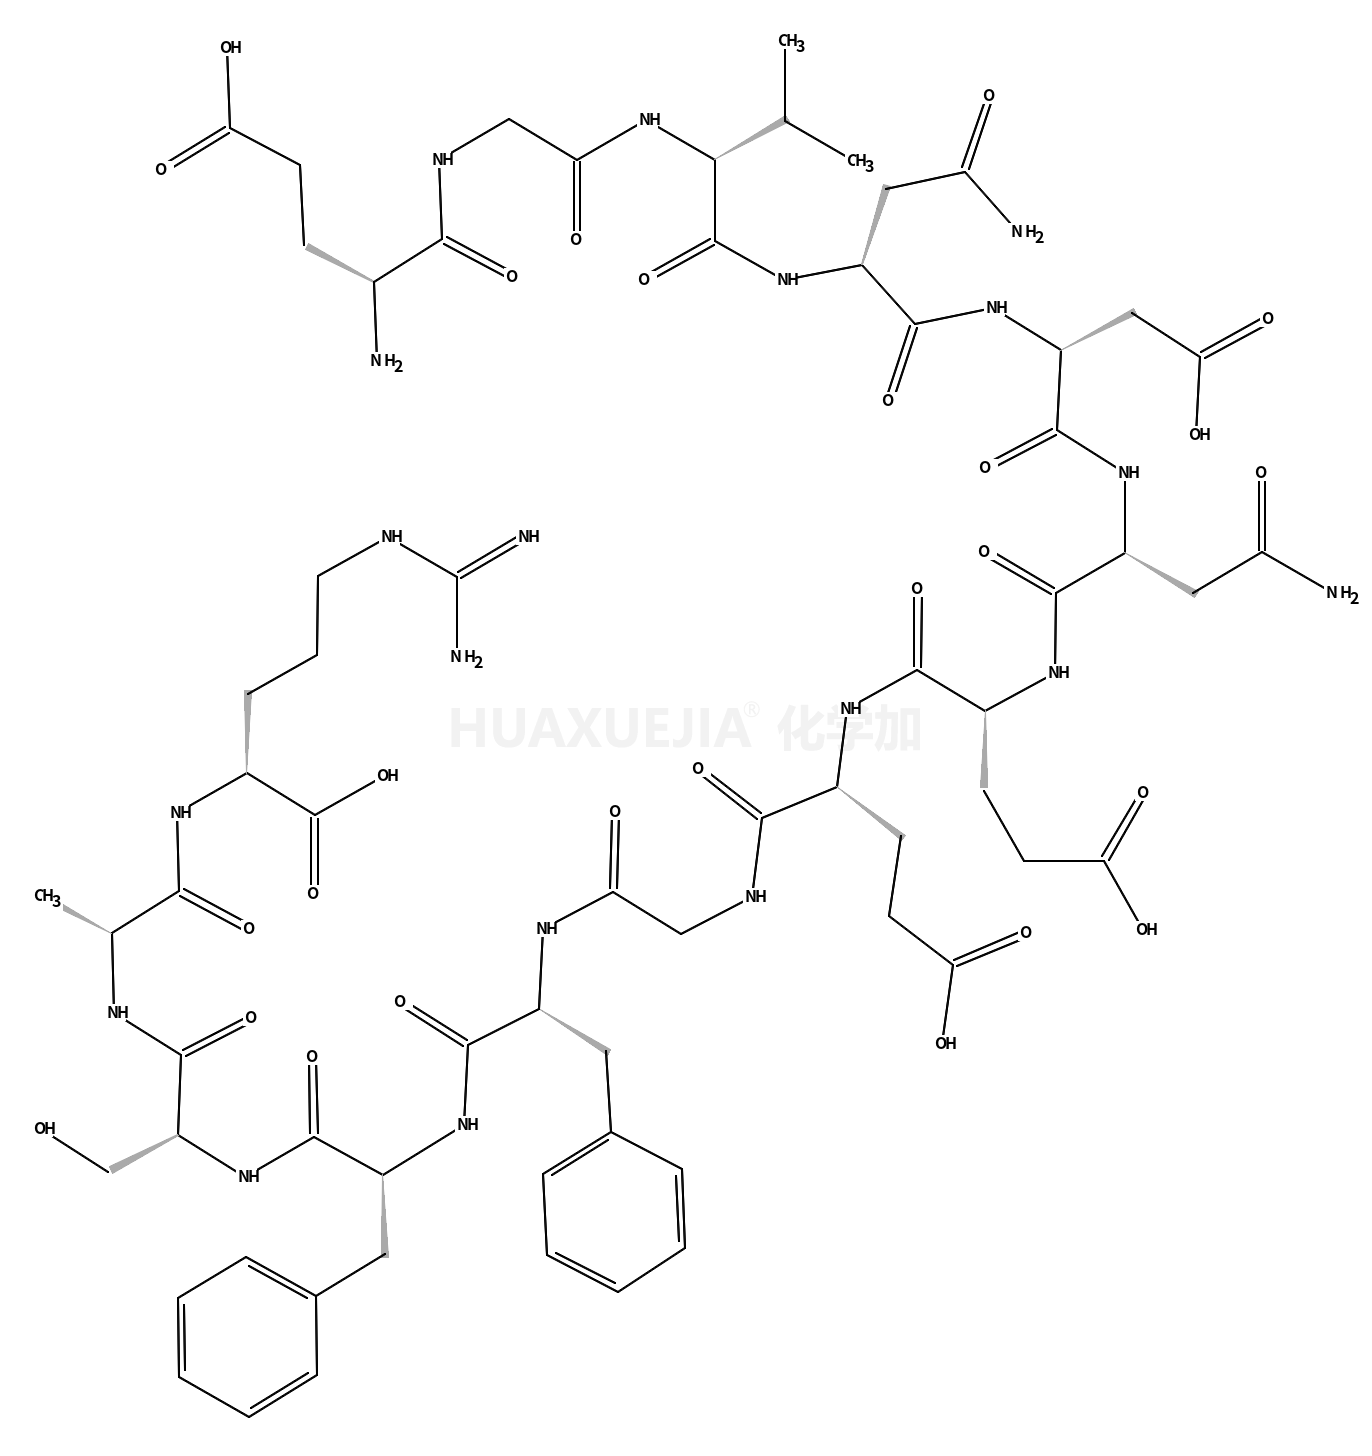 (GLU1)-FIBRINOPEPTIDE B